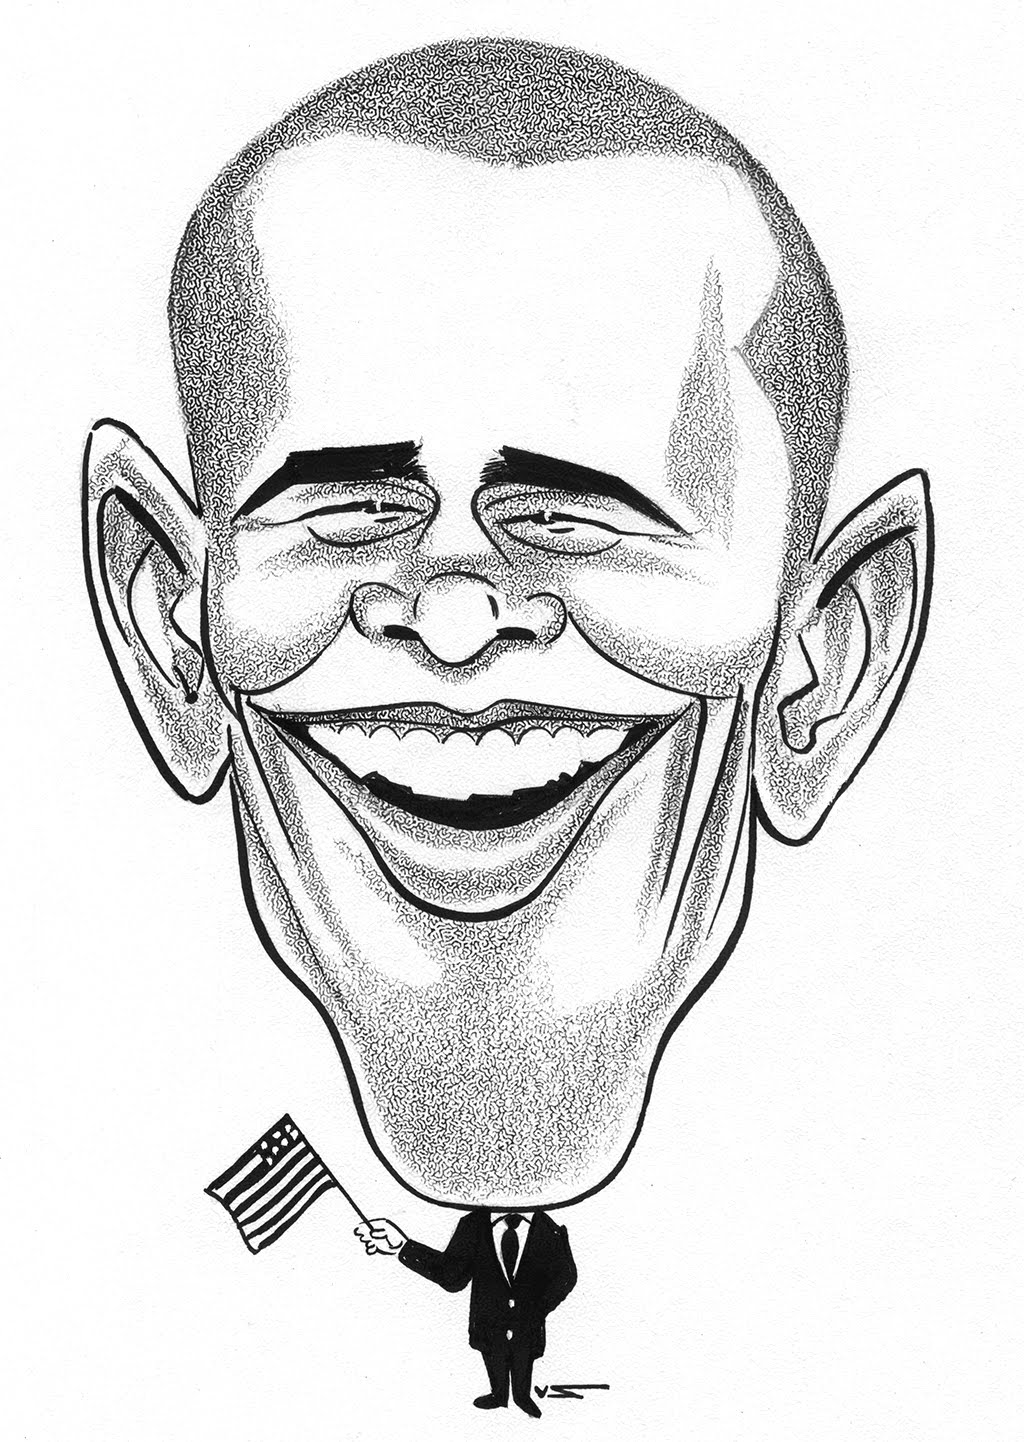 Сатирический образ человека шарж. Сатирический портрет Обама. Дружеский шарж легкий Барак Обама. Мишустин сатирический портрет.